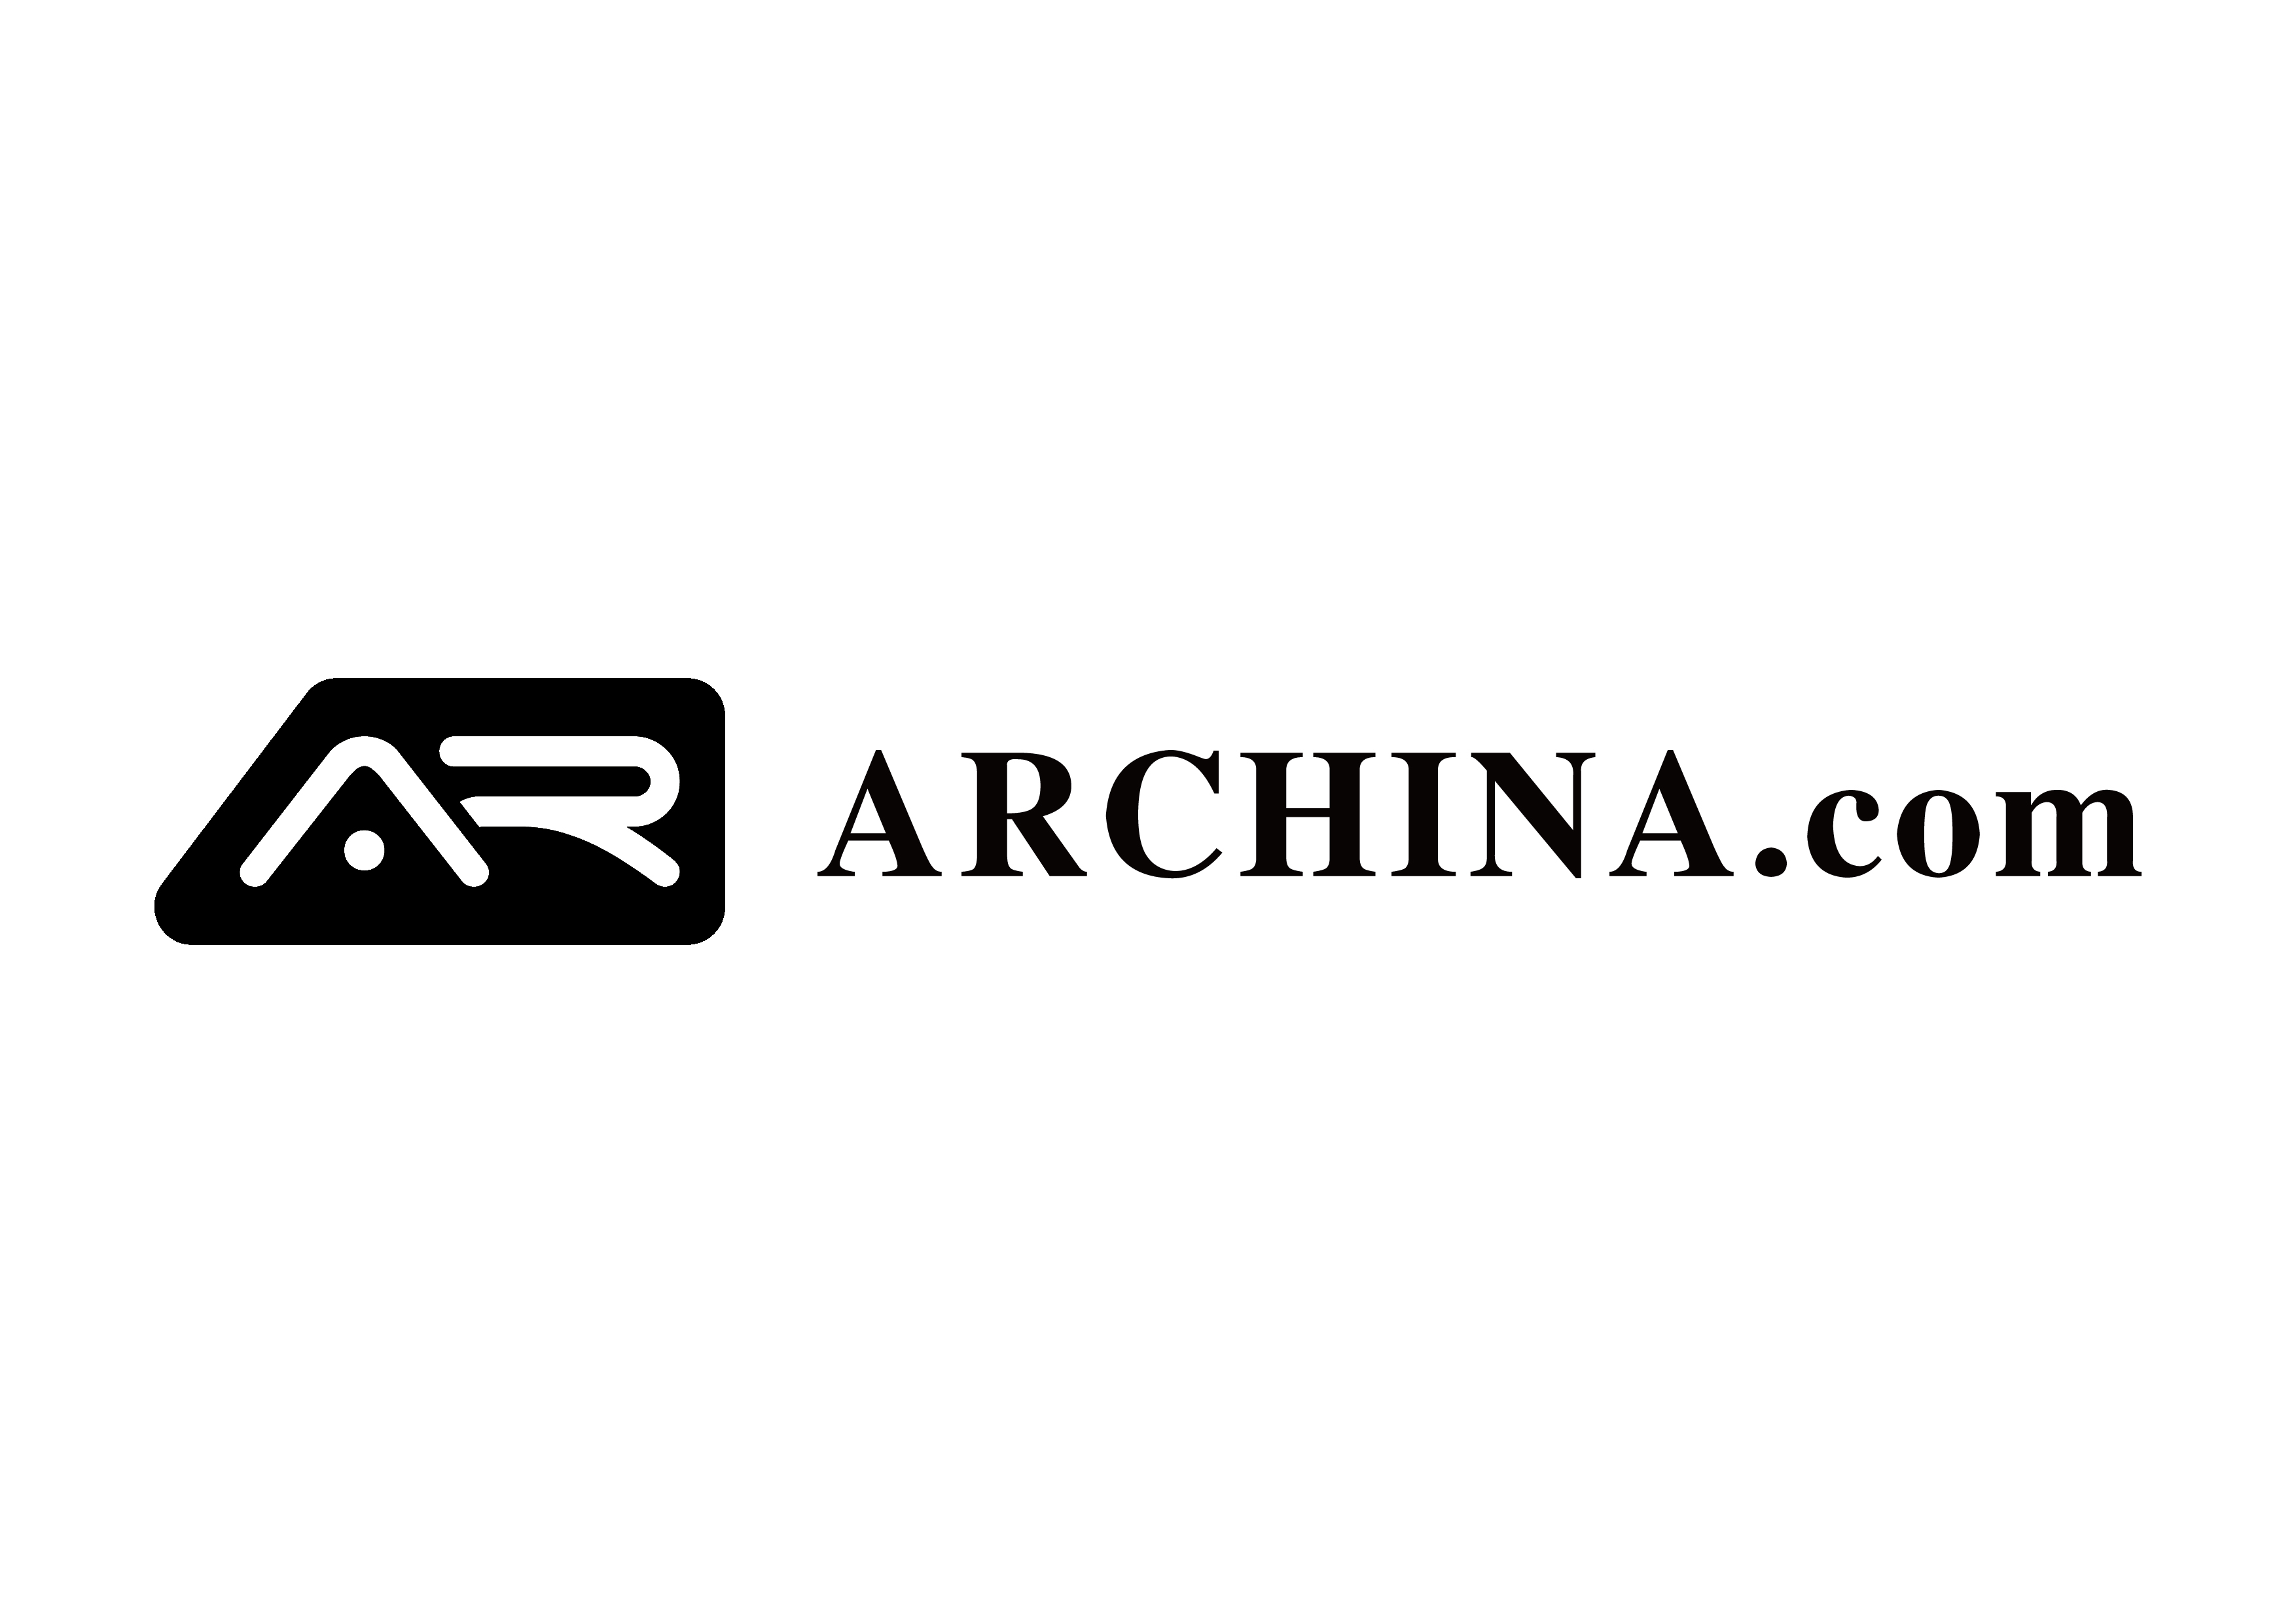 AR China logo